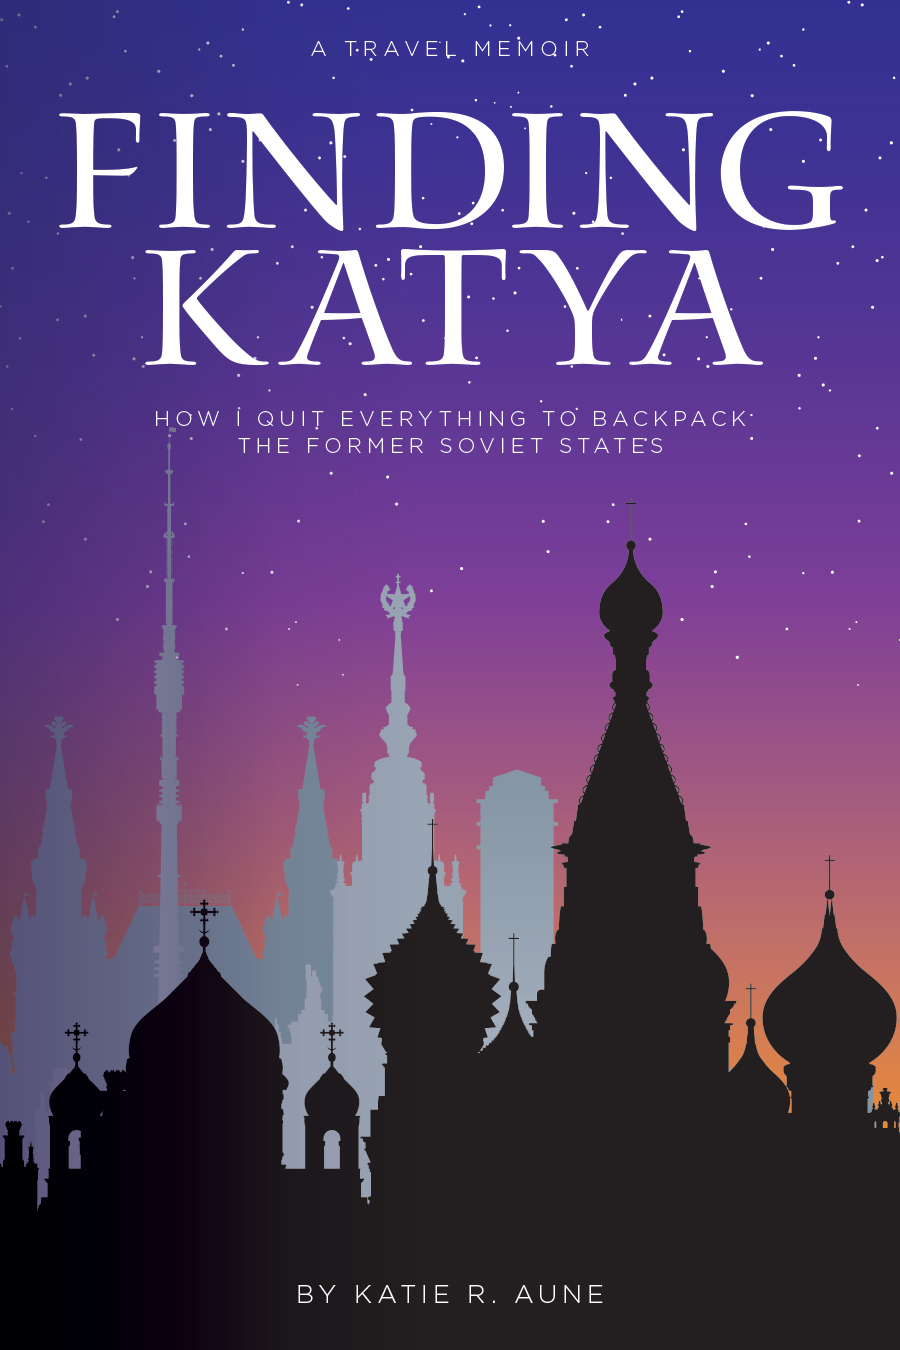 Finding Katya by Katie R. Aune